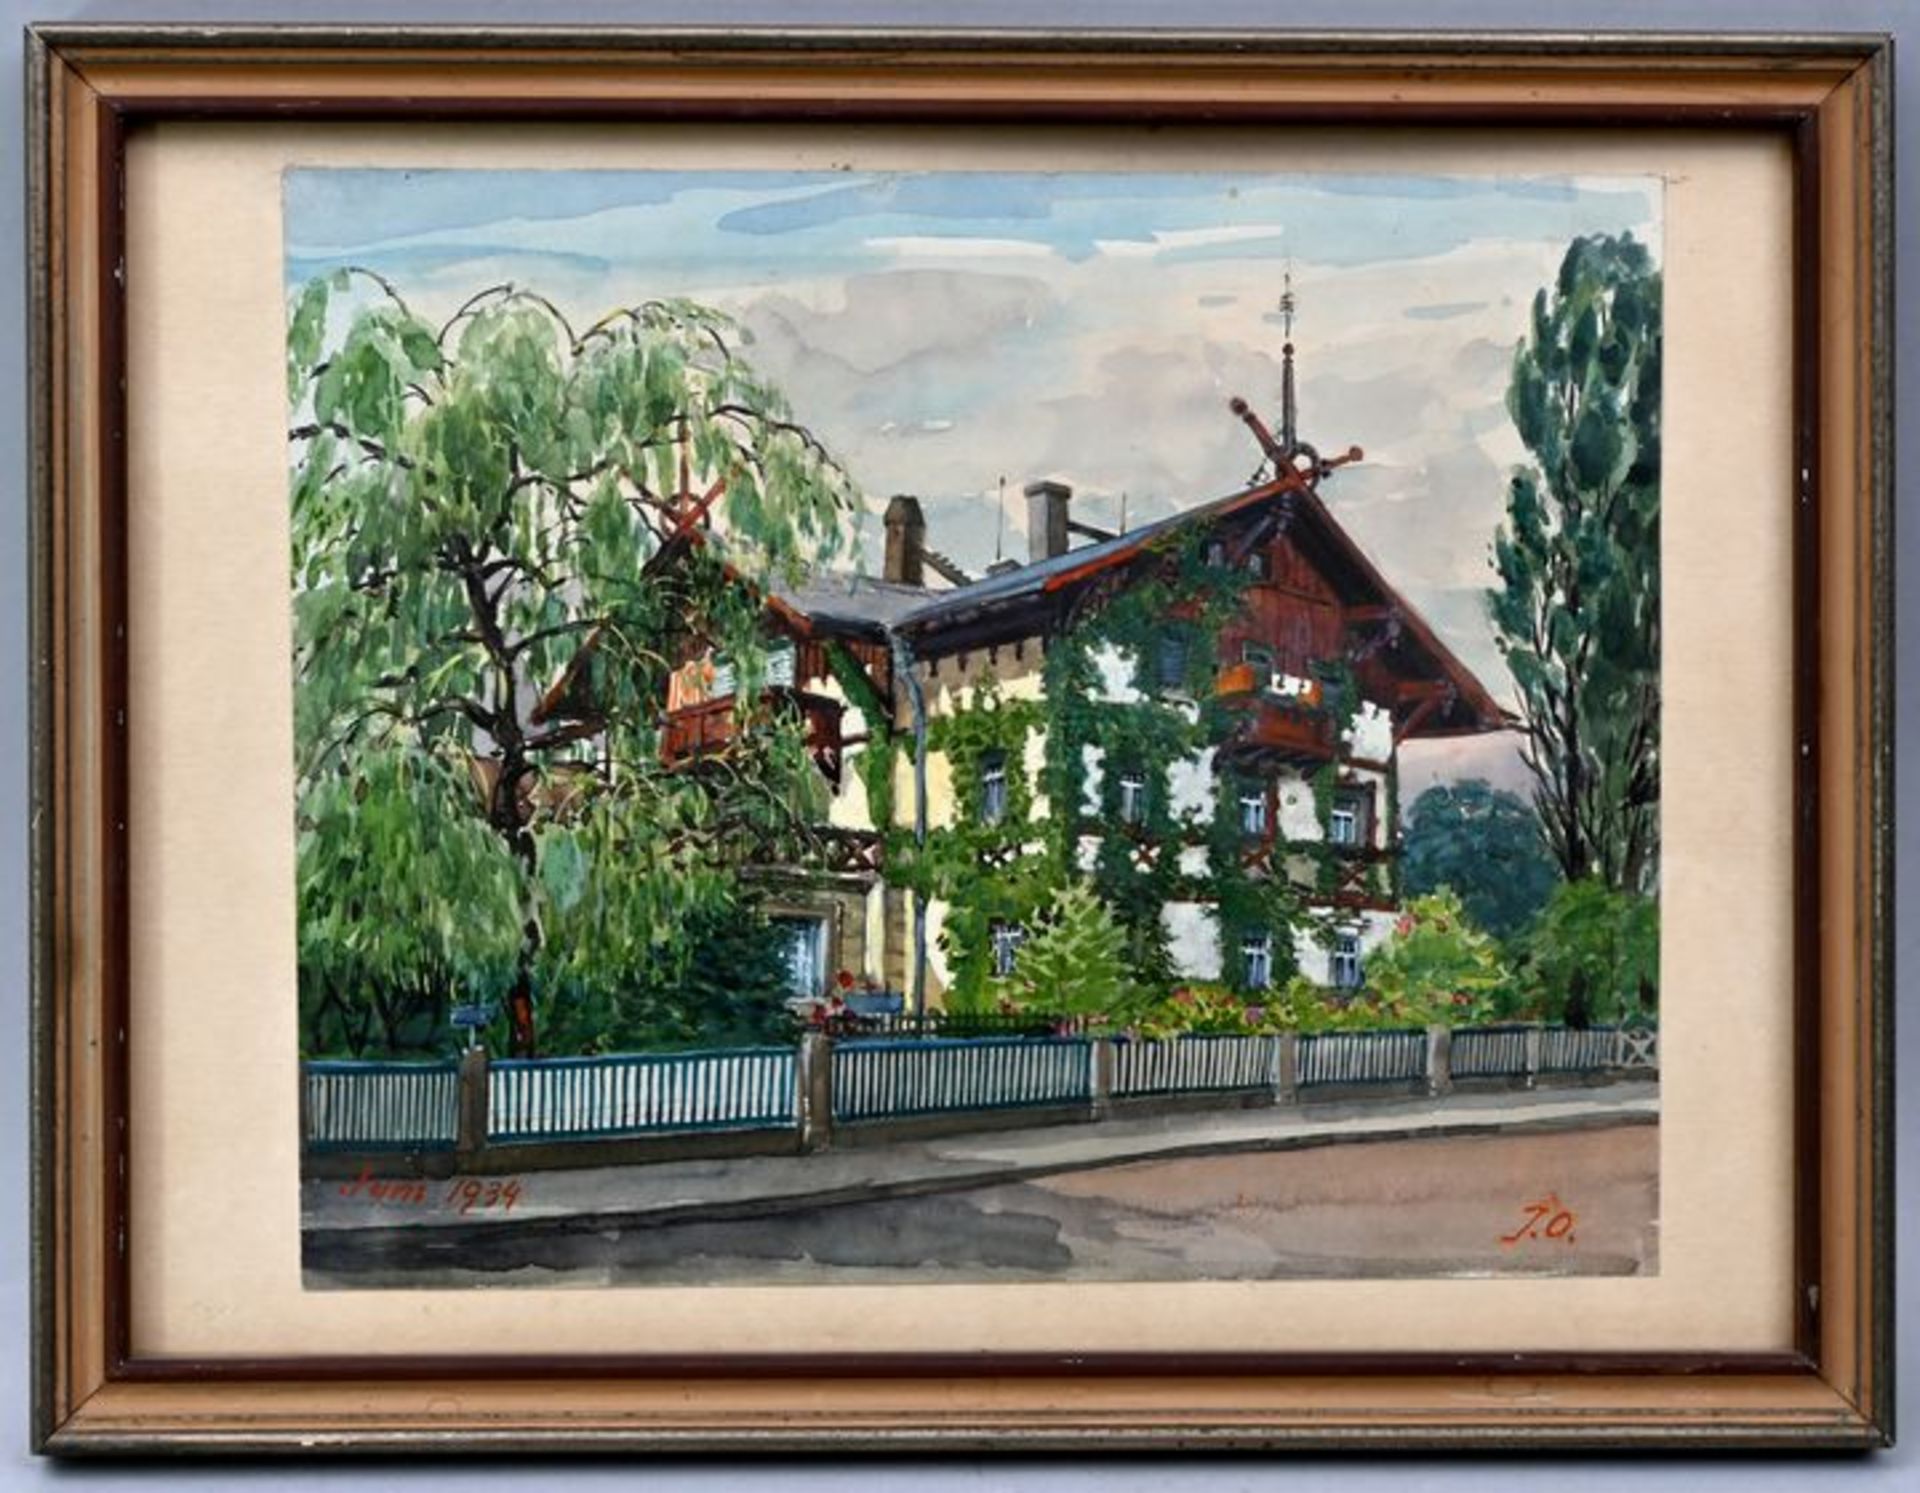 Monogrammist JOWeinberankte Villa im Schweizerstil (Dresden?). Aquarell und Gouache. 1934. Mo - Bild 2 aus 2